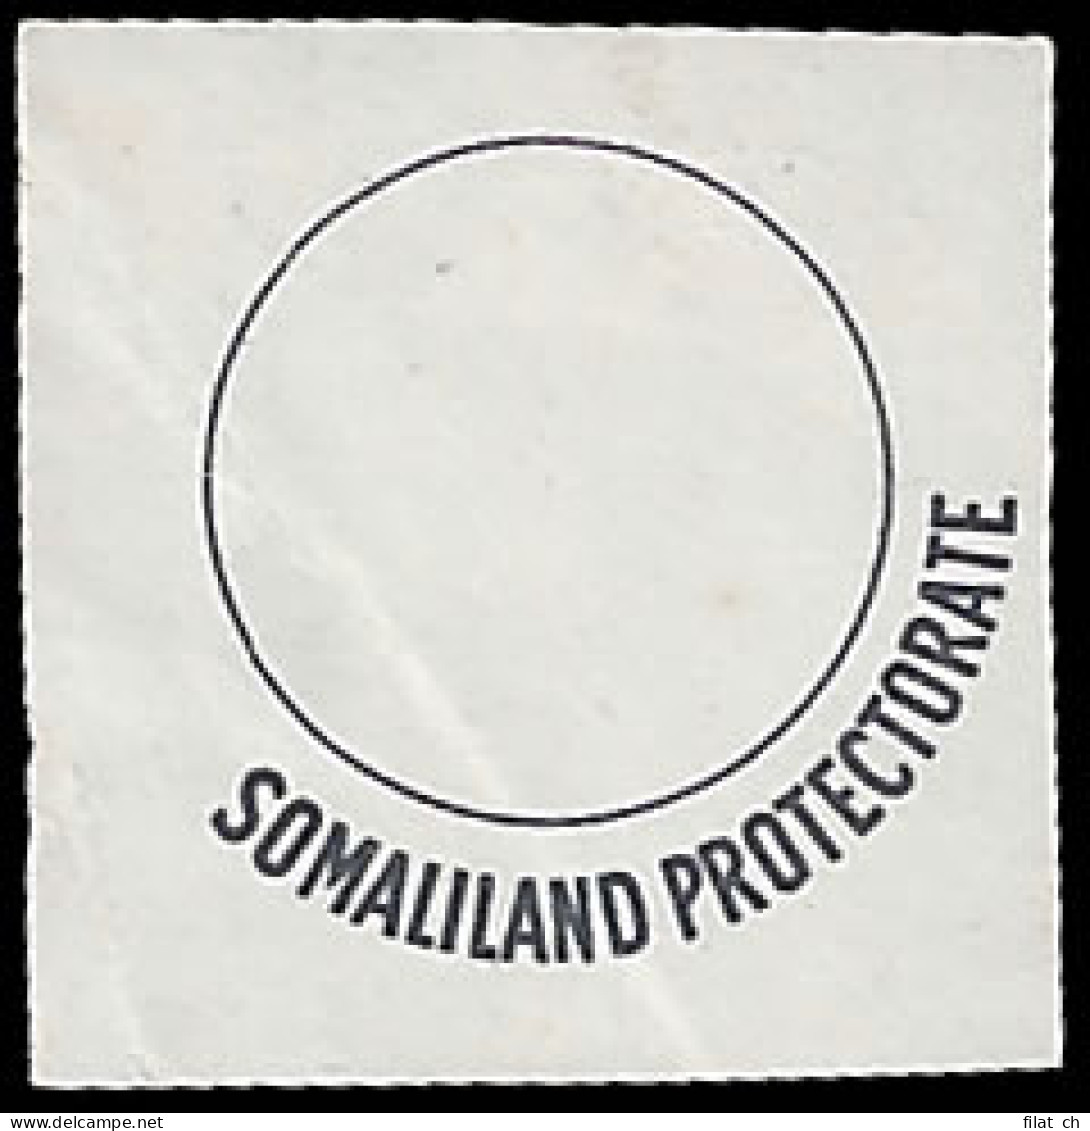 Somaliland 1936 KEVIII Essay Proof, Rare - Somaliland (Protettorato ...-1959)